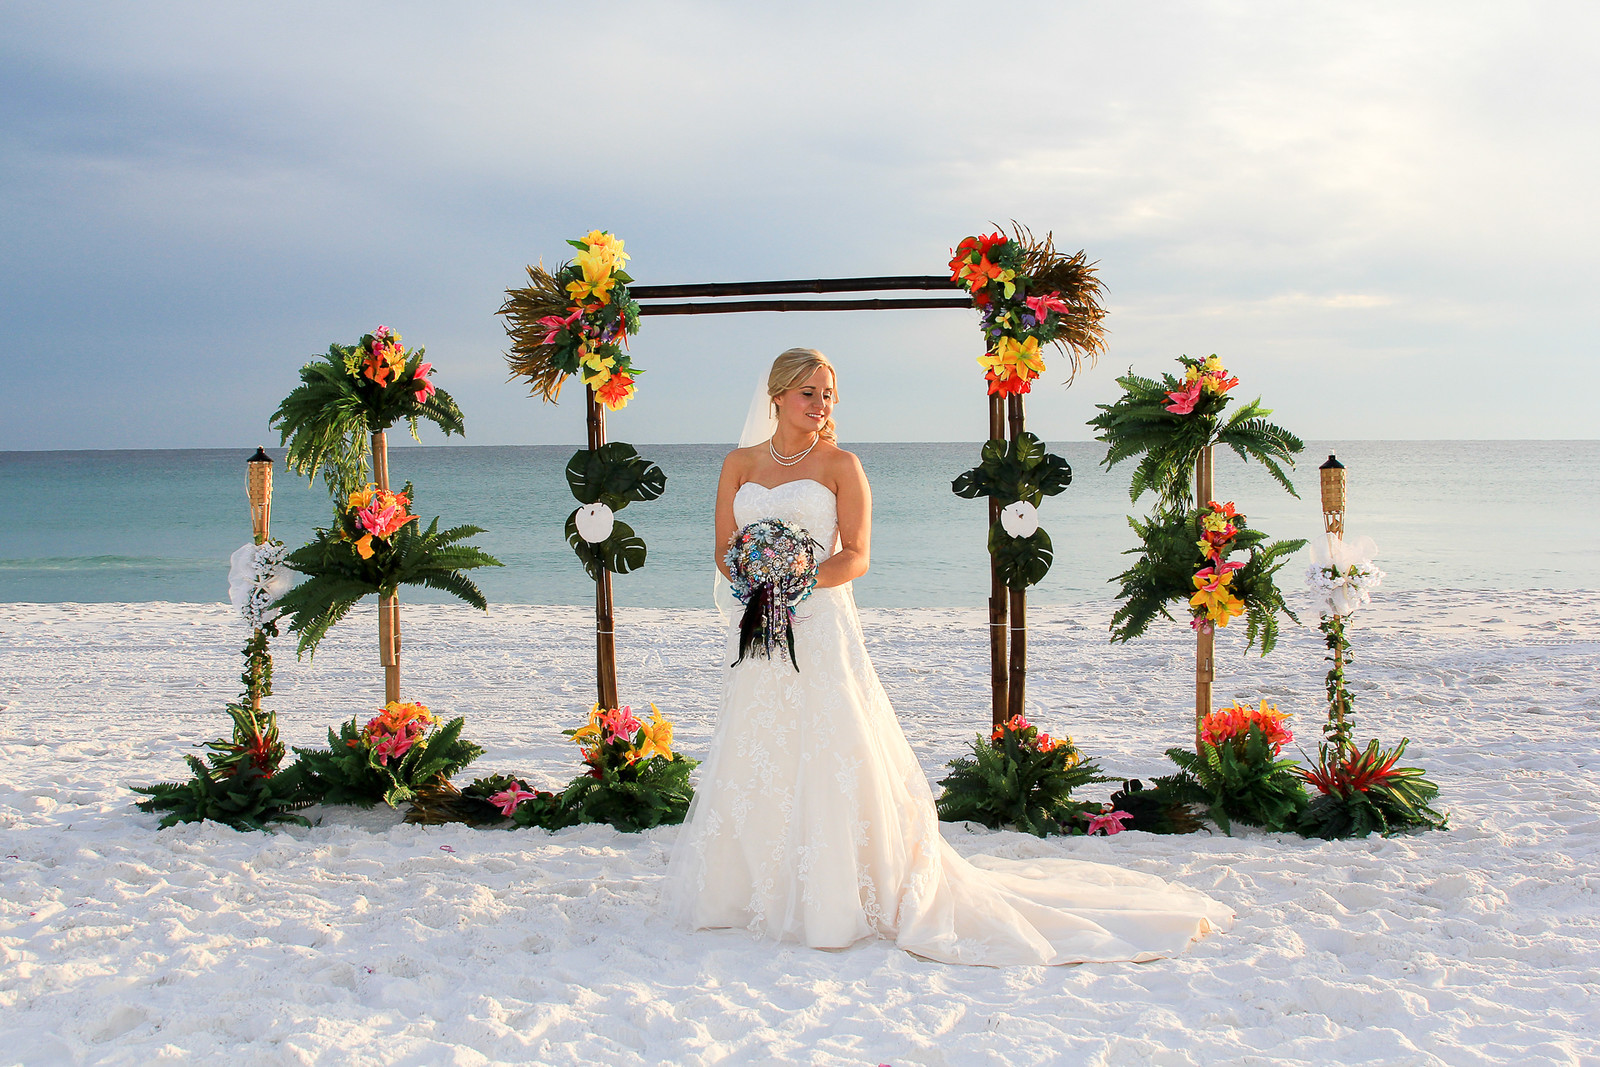 Beach Weddings In Destin Fl
 Destin Beach Wedding Locations Destin Fl Beach Weddings